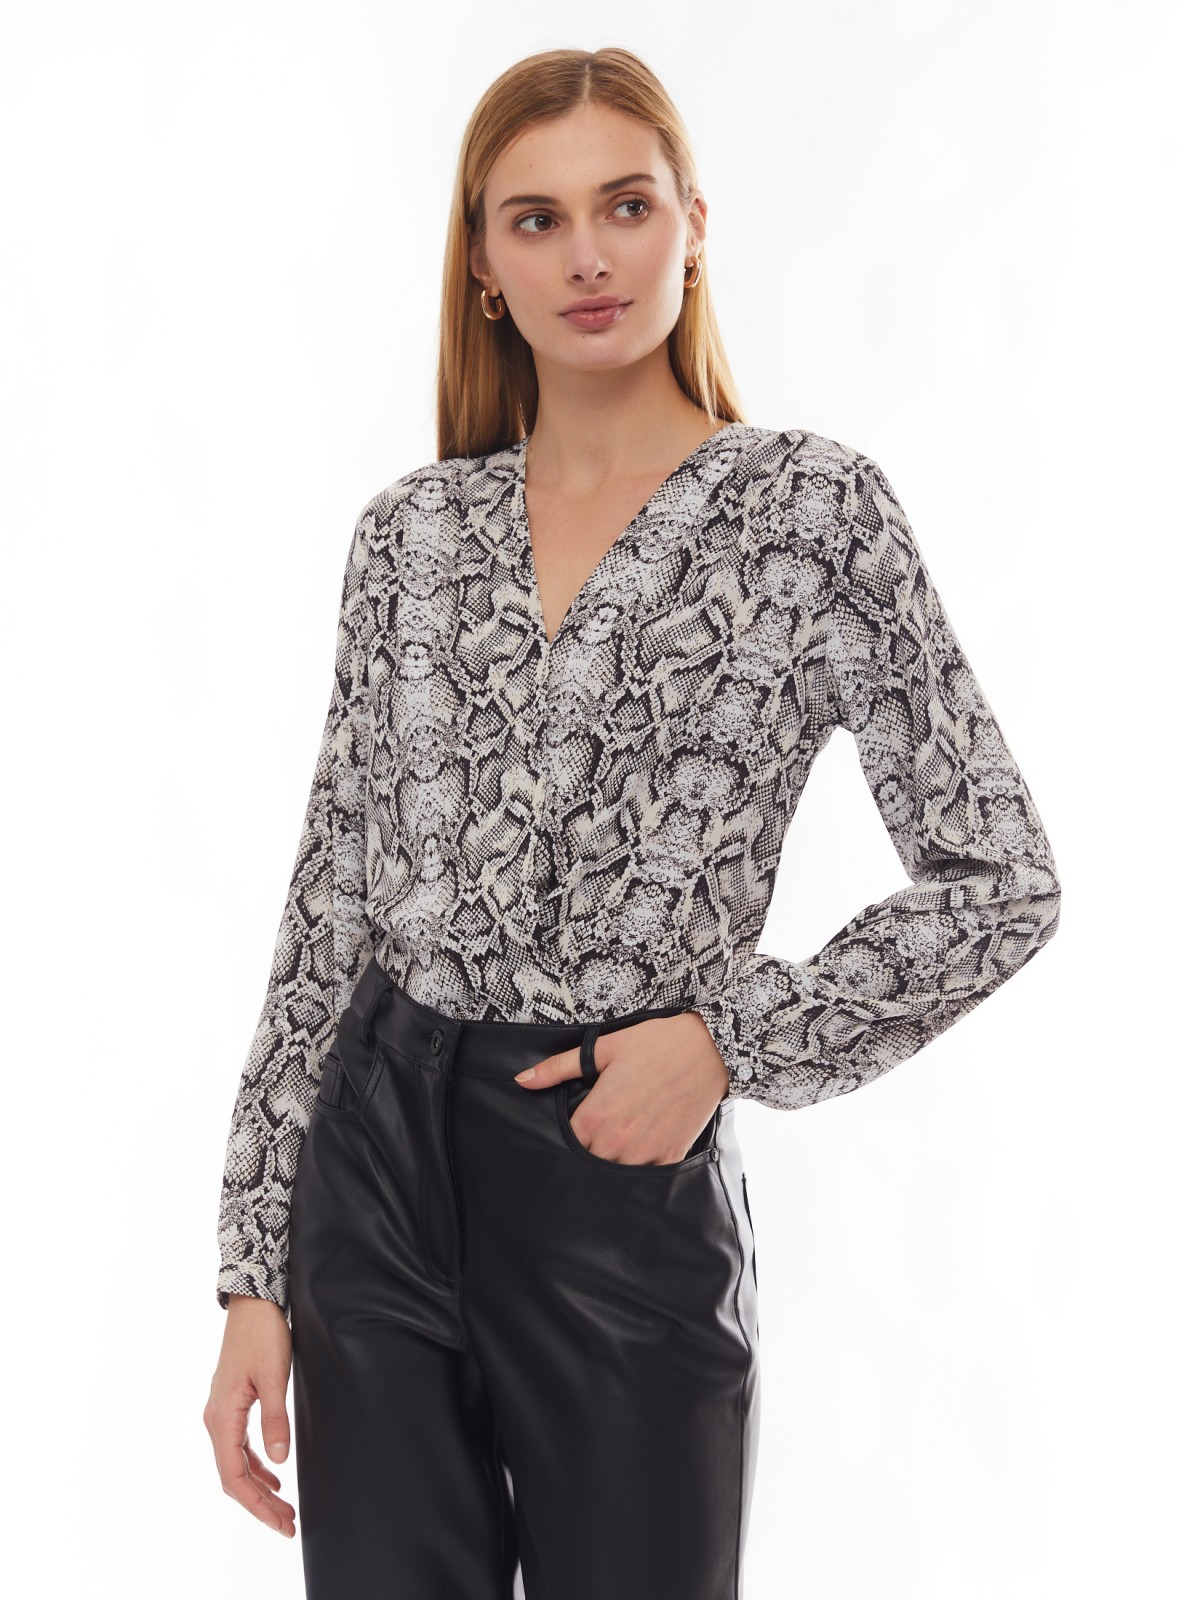 Принтованная блузка на резинке с запахом zolla 024131159571, цвет серый, размер XS - фото 1